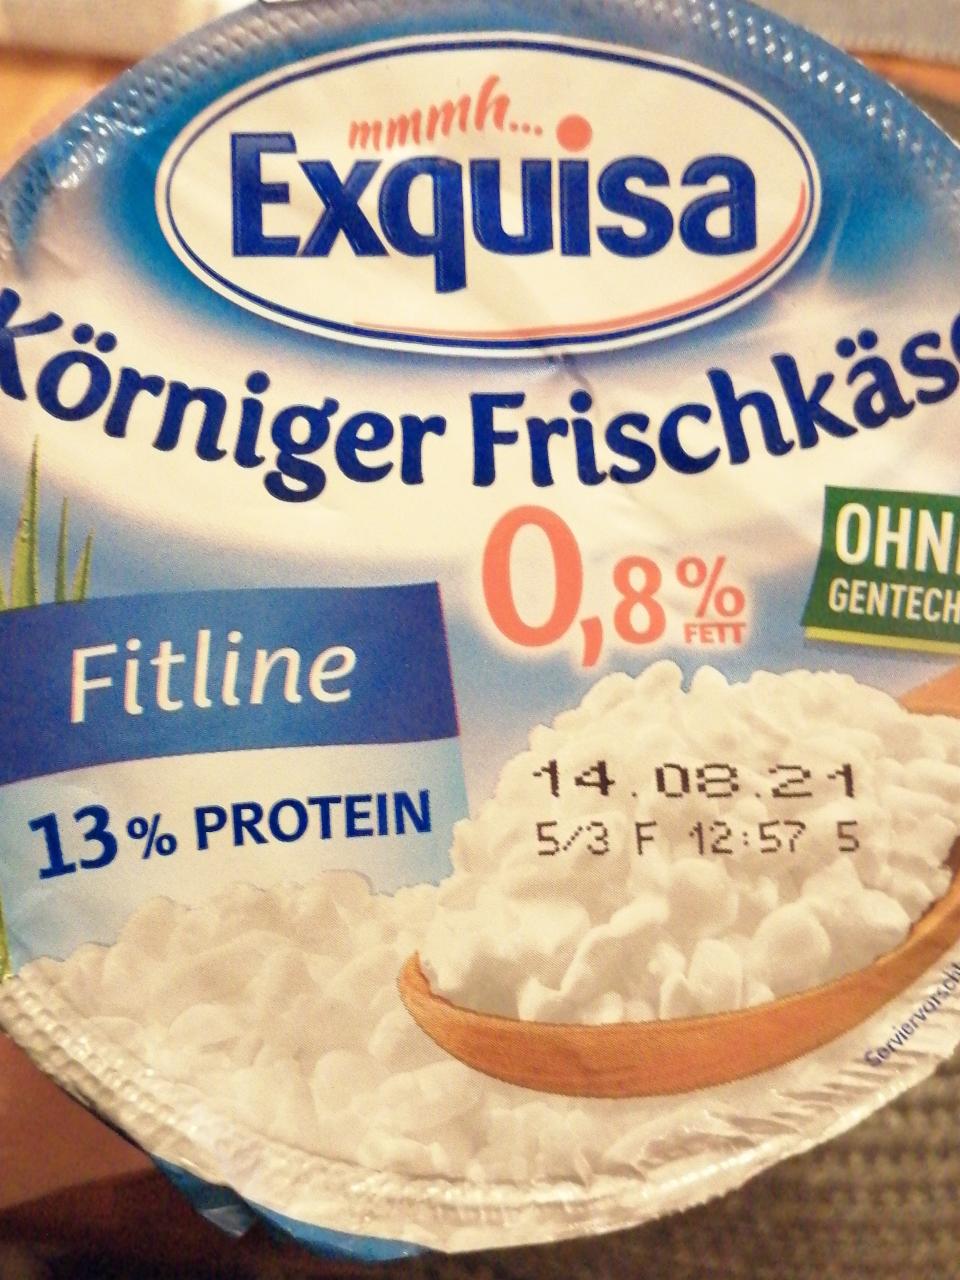 Fotografie - Körniger Frischkäse fitline 0,8 % Fett Exquisa